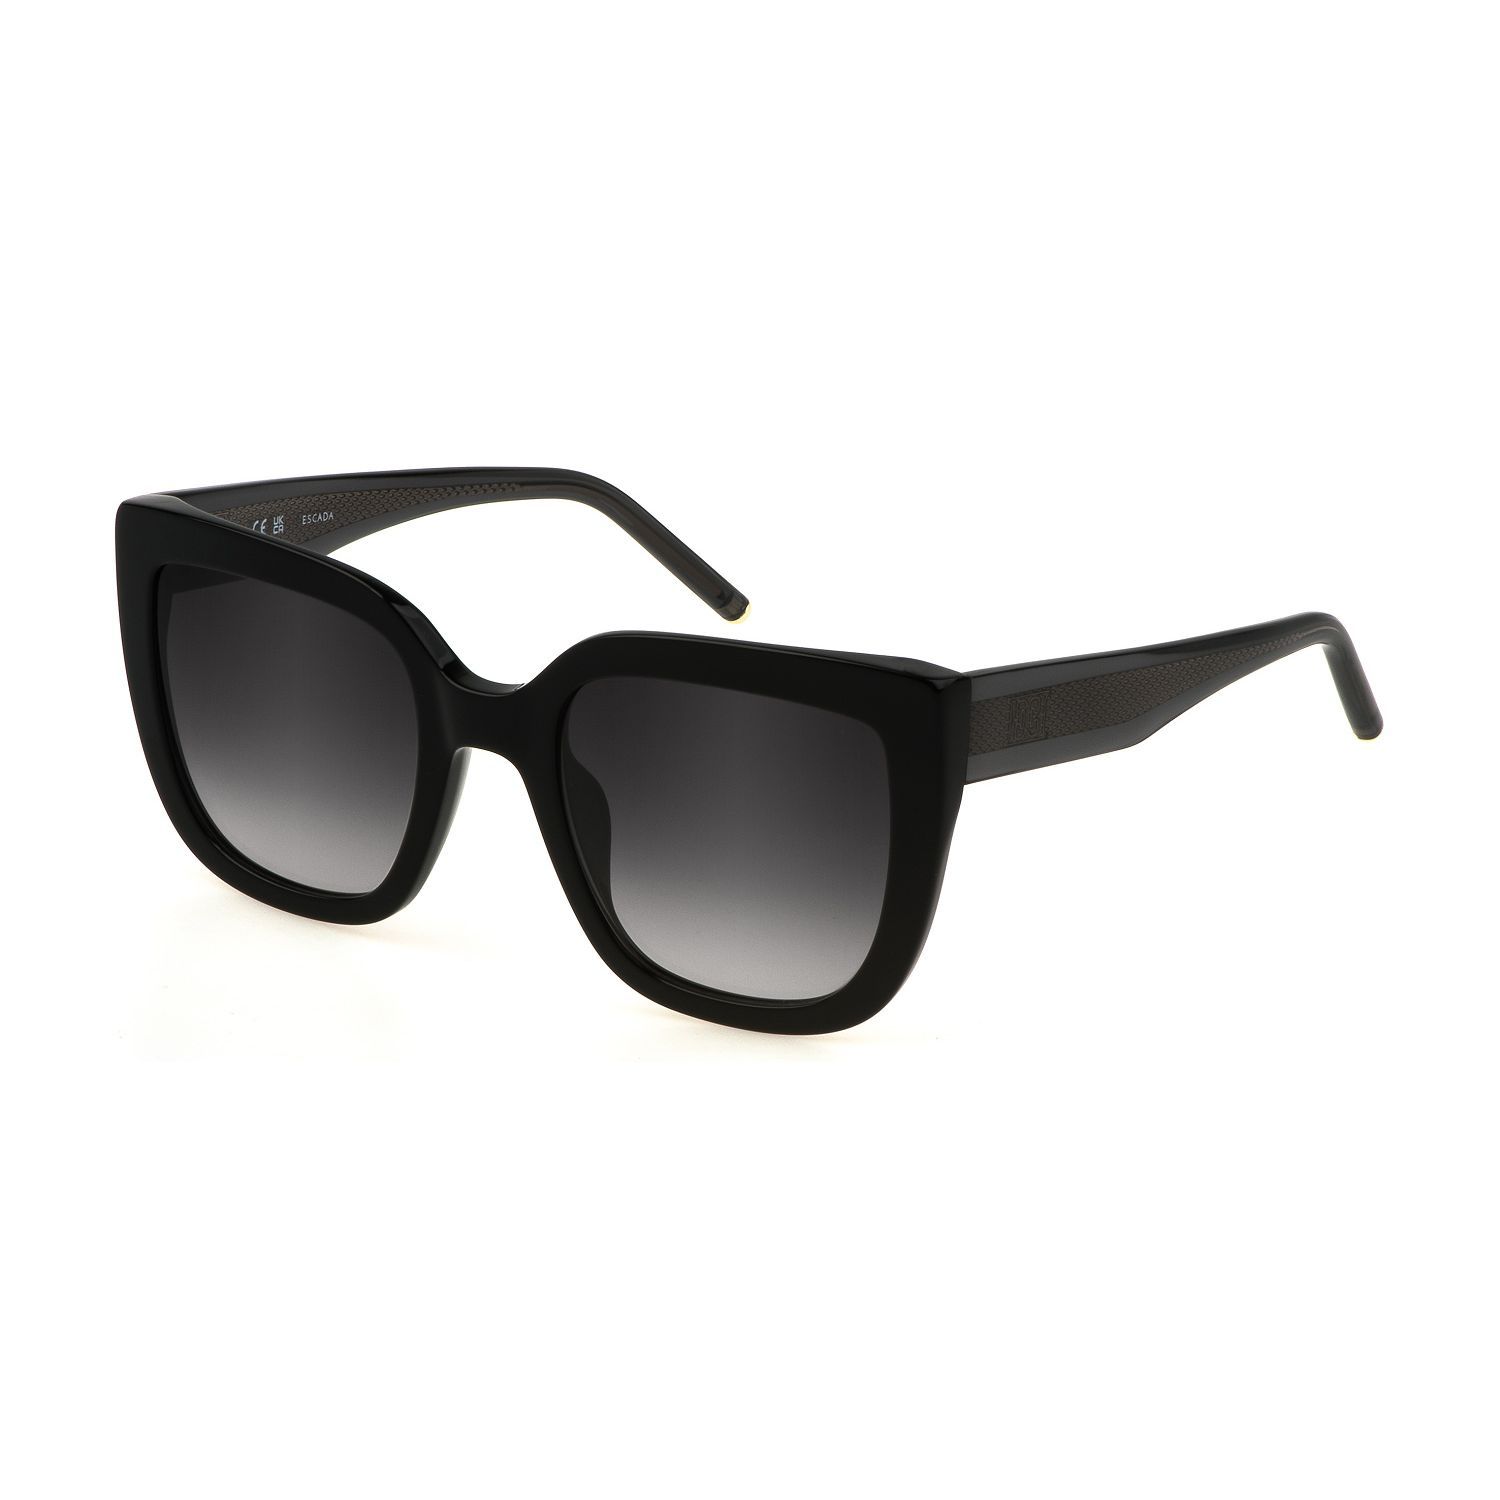 SESD98 Square Sunglasses 0700 - size 52